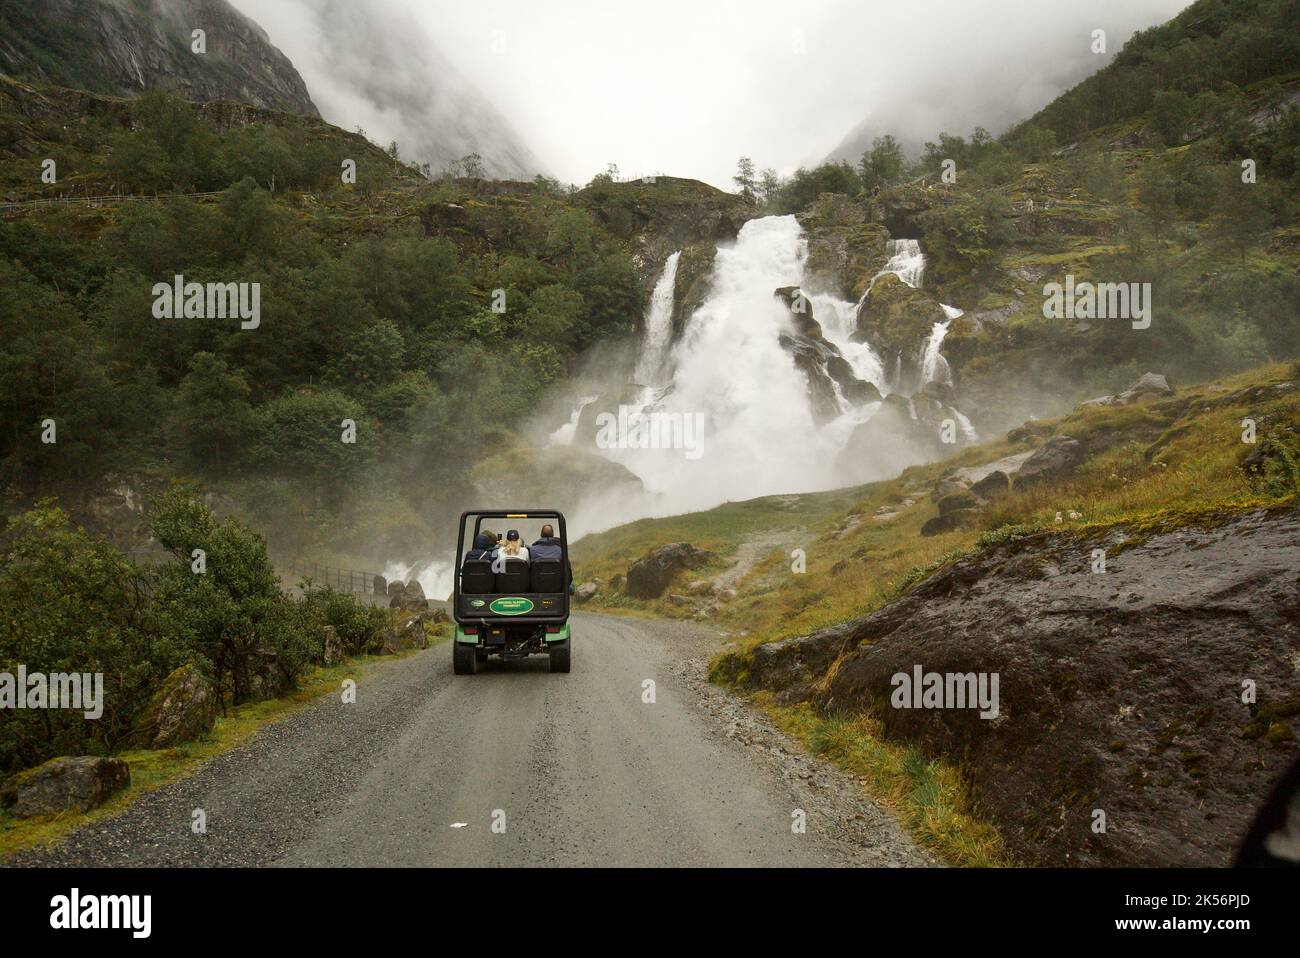 Ein Trollauto, das einen Berg hinauf fährt, vorbei an Wasserfällen, zum Briksdal Glacier, Briksdalsbreen. Ein touristischer Gletscher-Shuttle - Briksdalsbre. Stockfoto